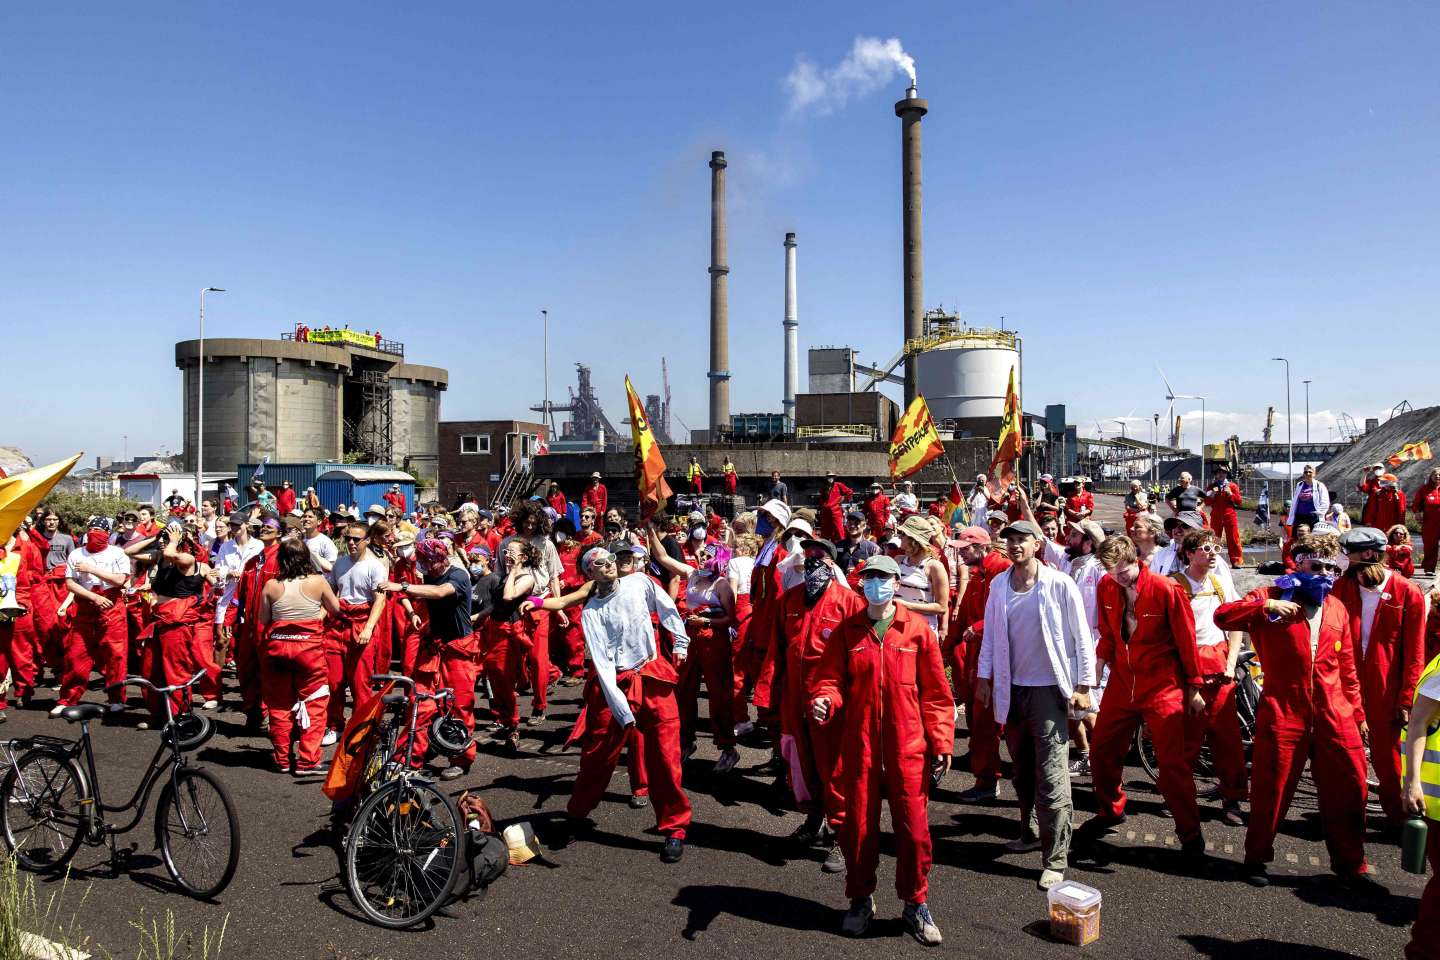 Des militants de Greenpeace forcent les barrières d’une usine métallurgique de Tata Steel aux Pays-Bas